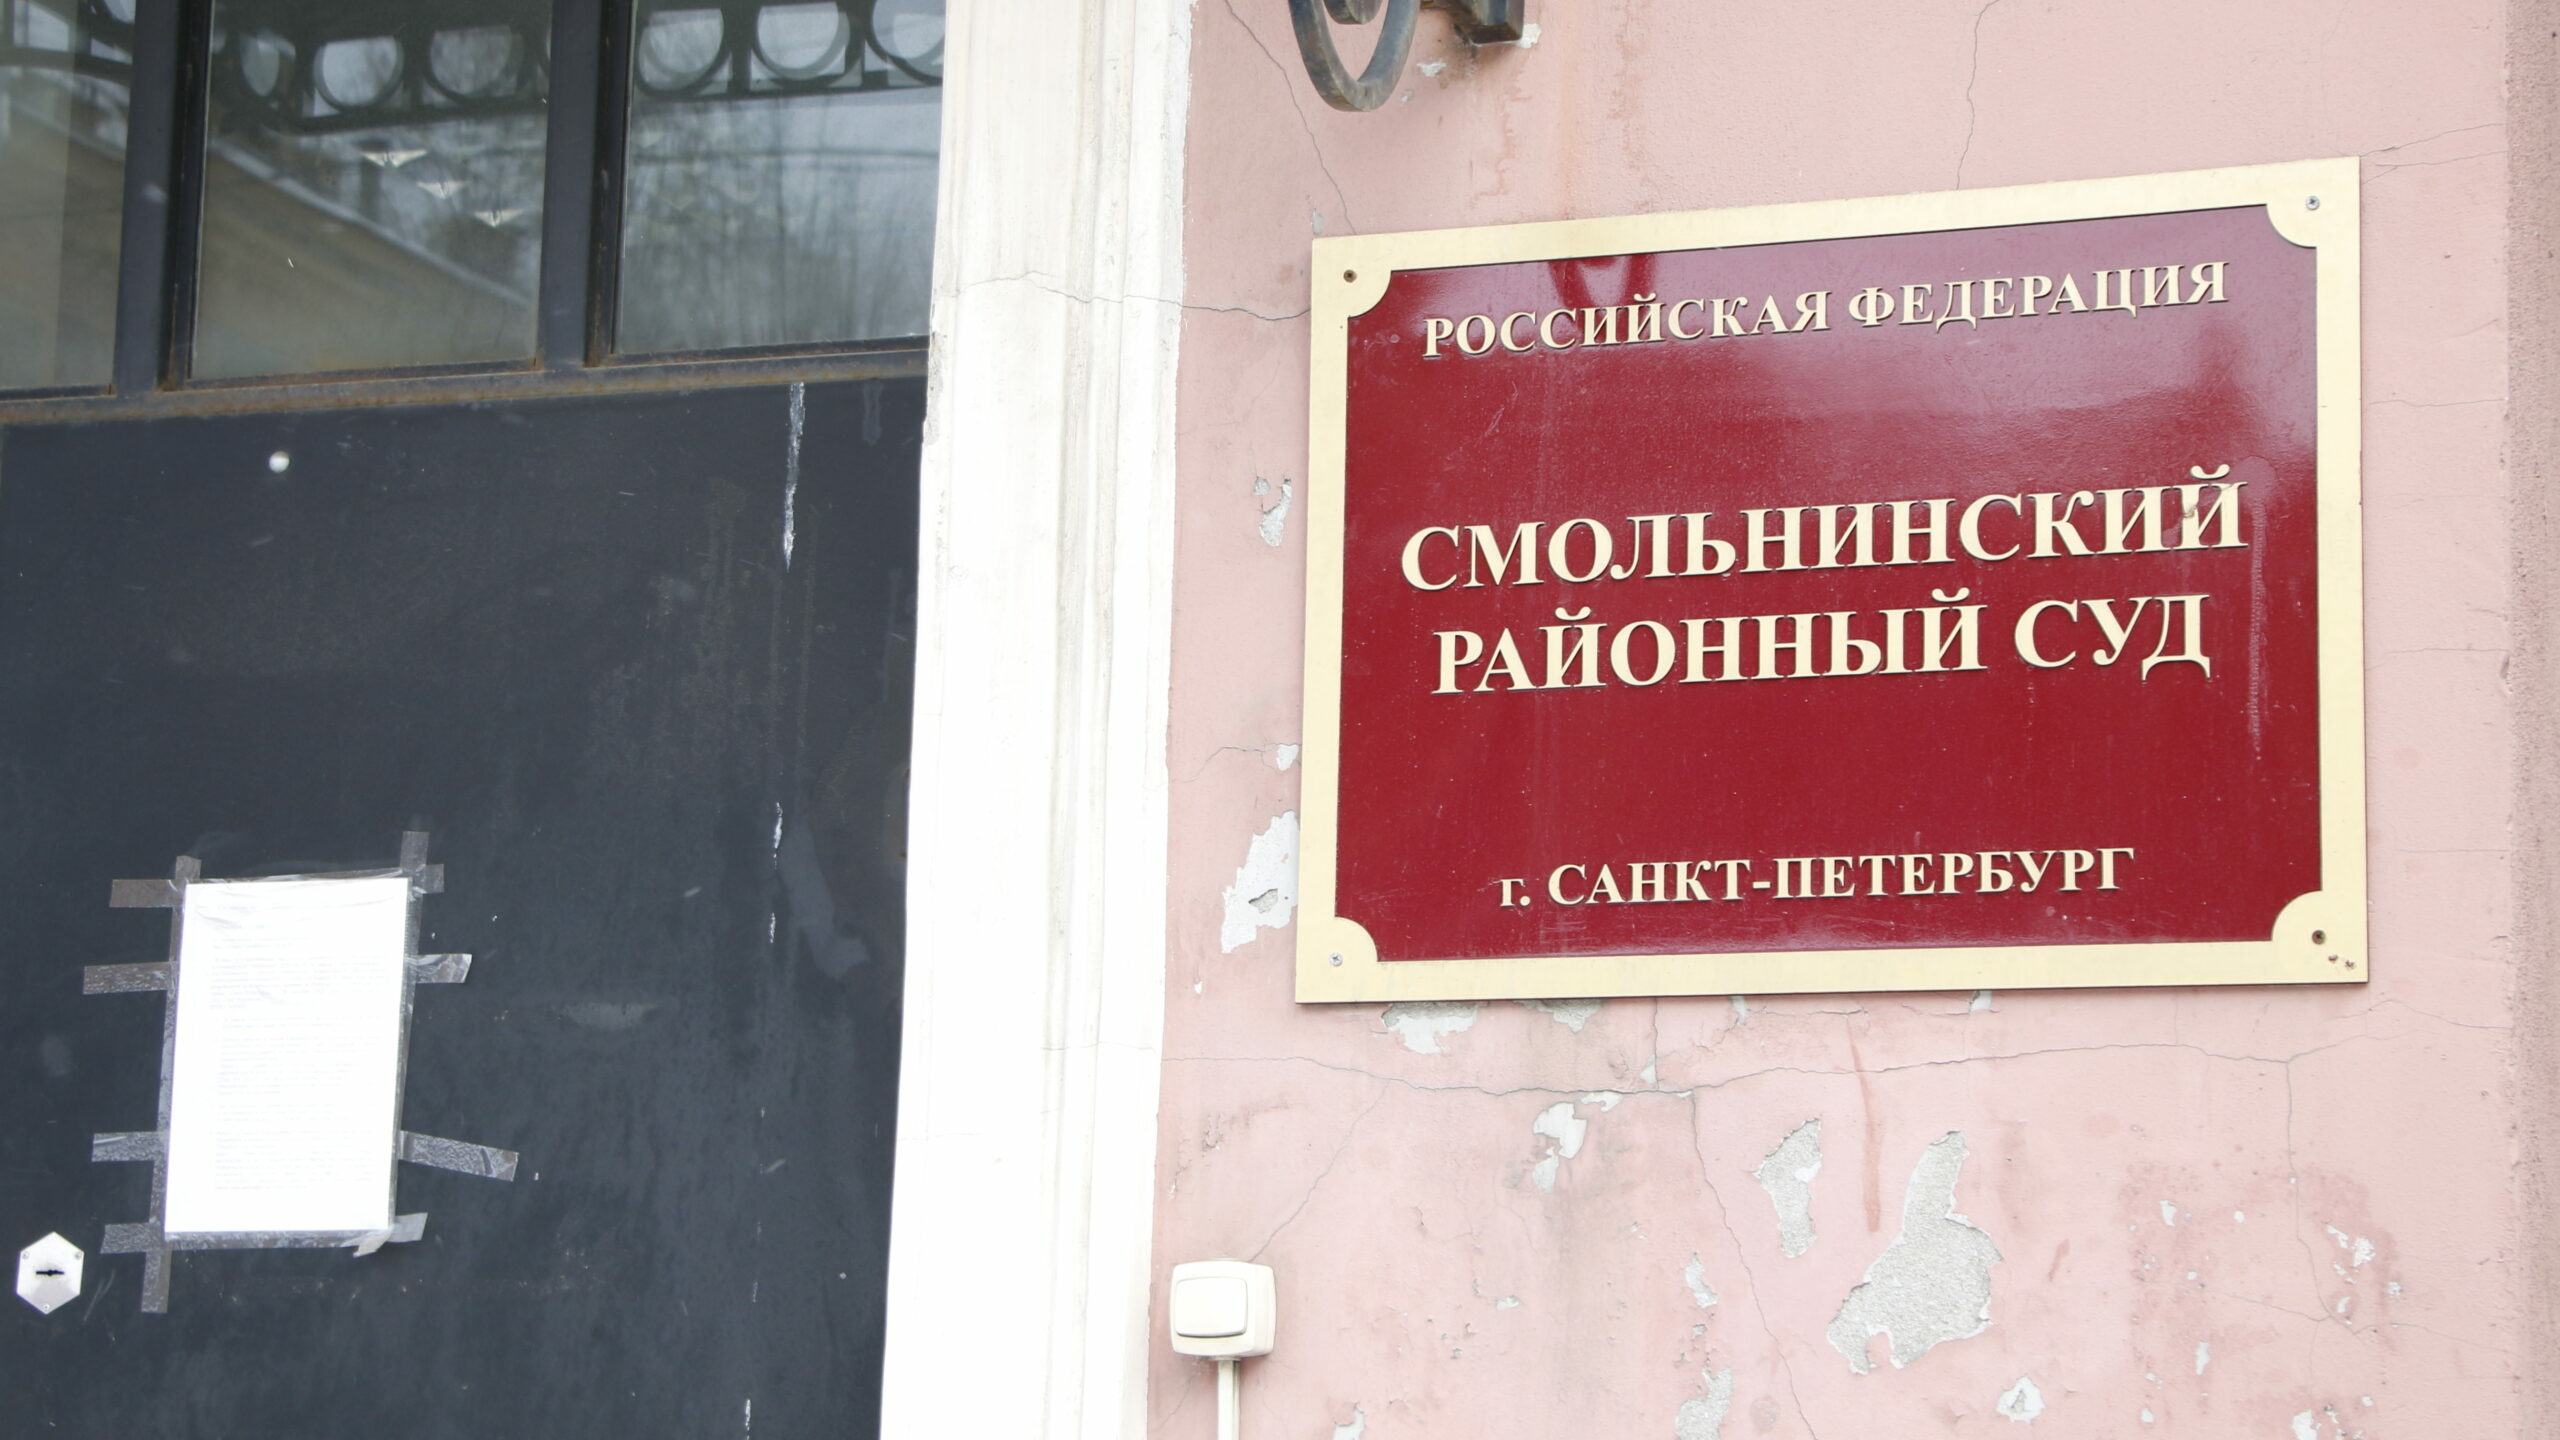 Ресторан в Петербурге закрыли на 90 суток из-за сальмонеллы в еде